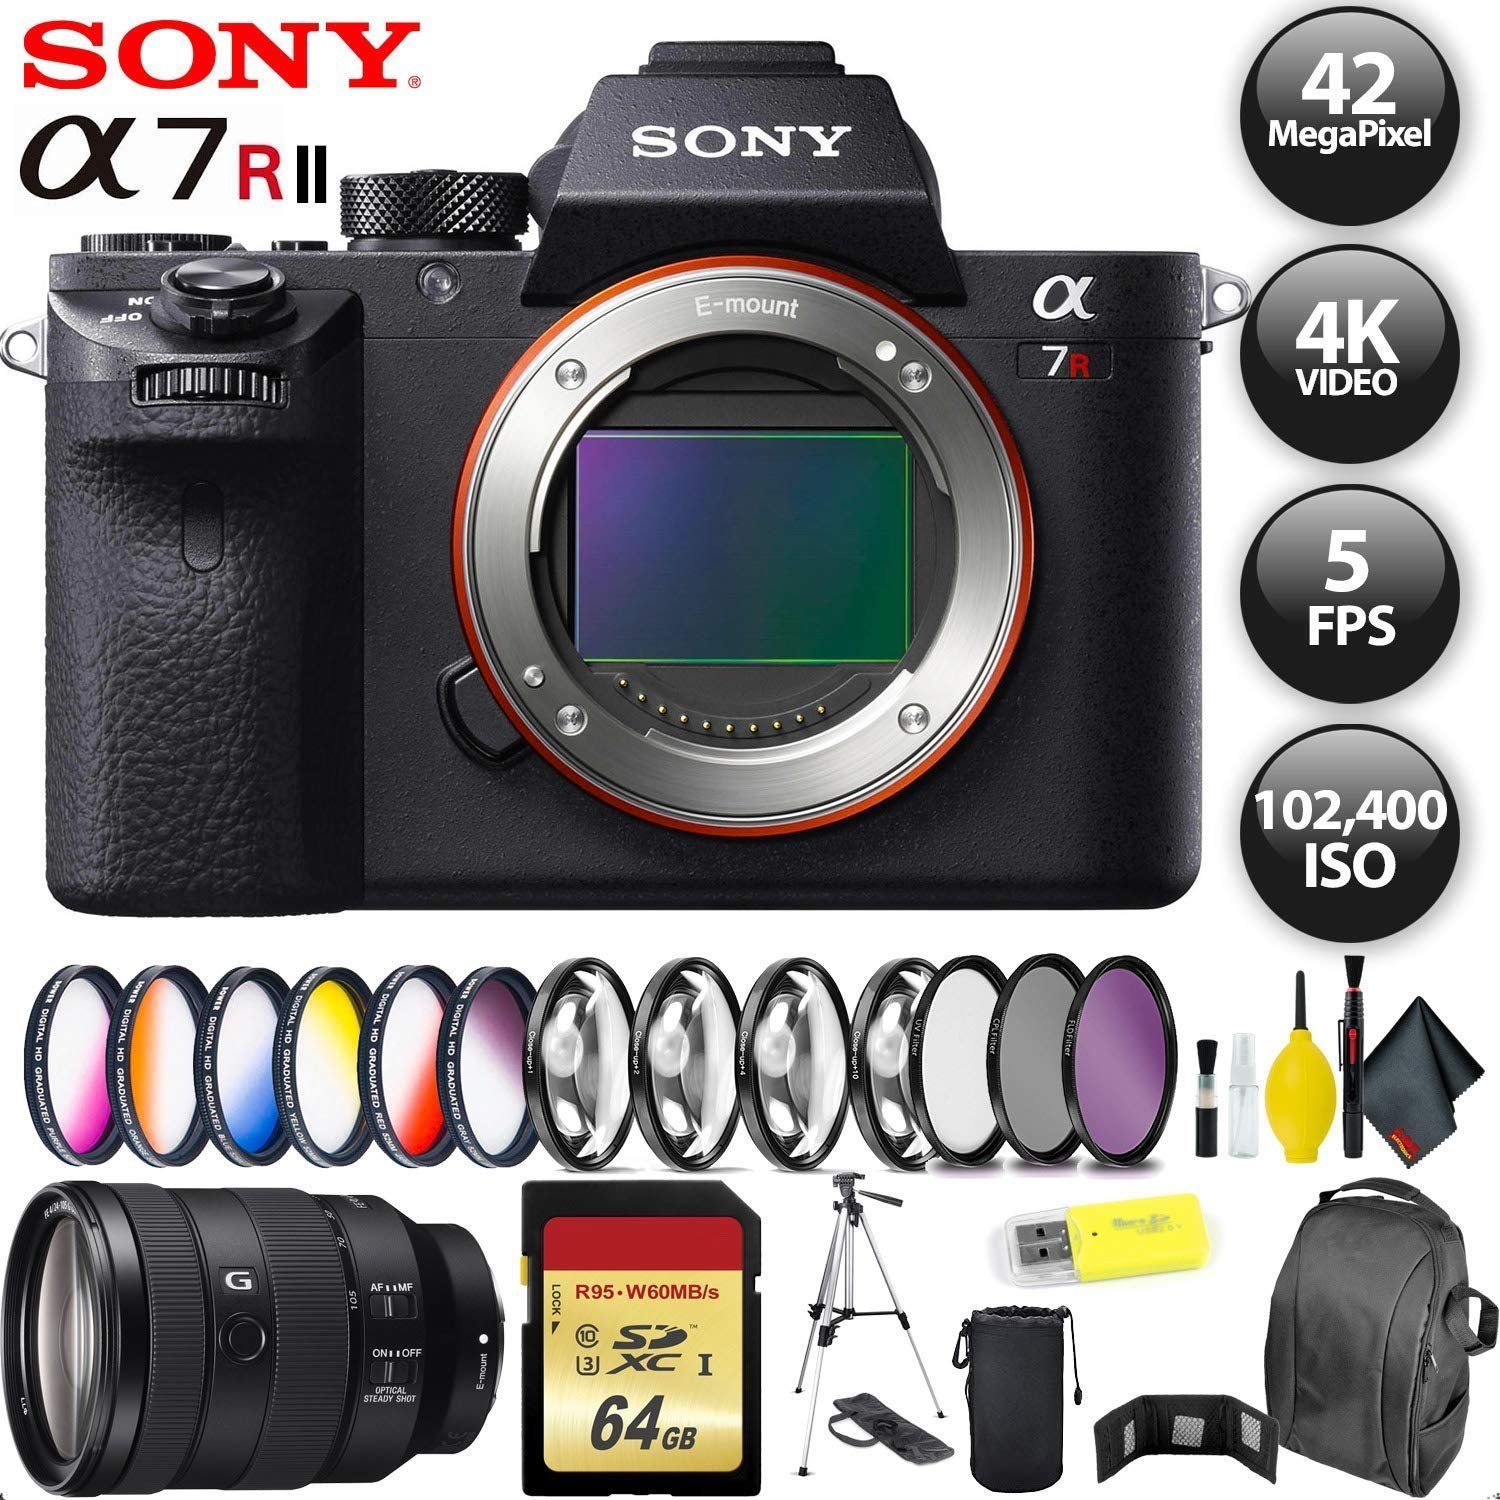 Sony Alpha a7R II Mirrorless Digital Camera International Model + 64GB Memory Card + Sony FE 24-105mm Lens